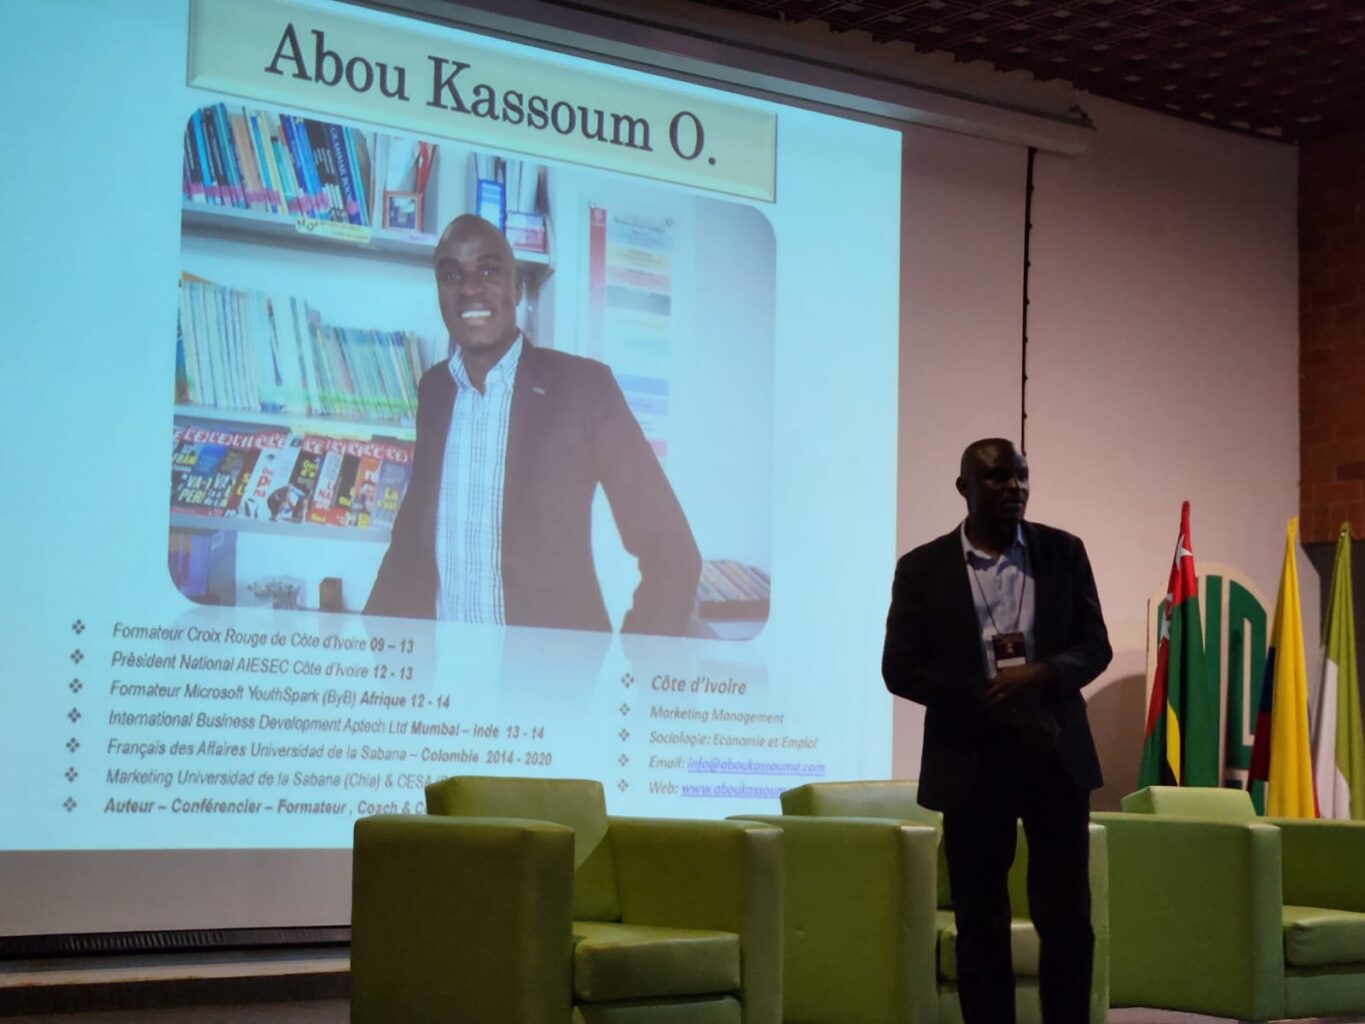 El profesor frances Abou Kassoum presentando su conversatorio 